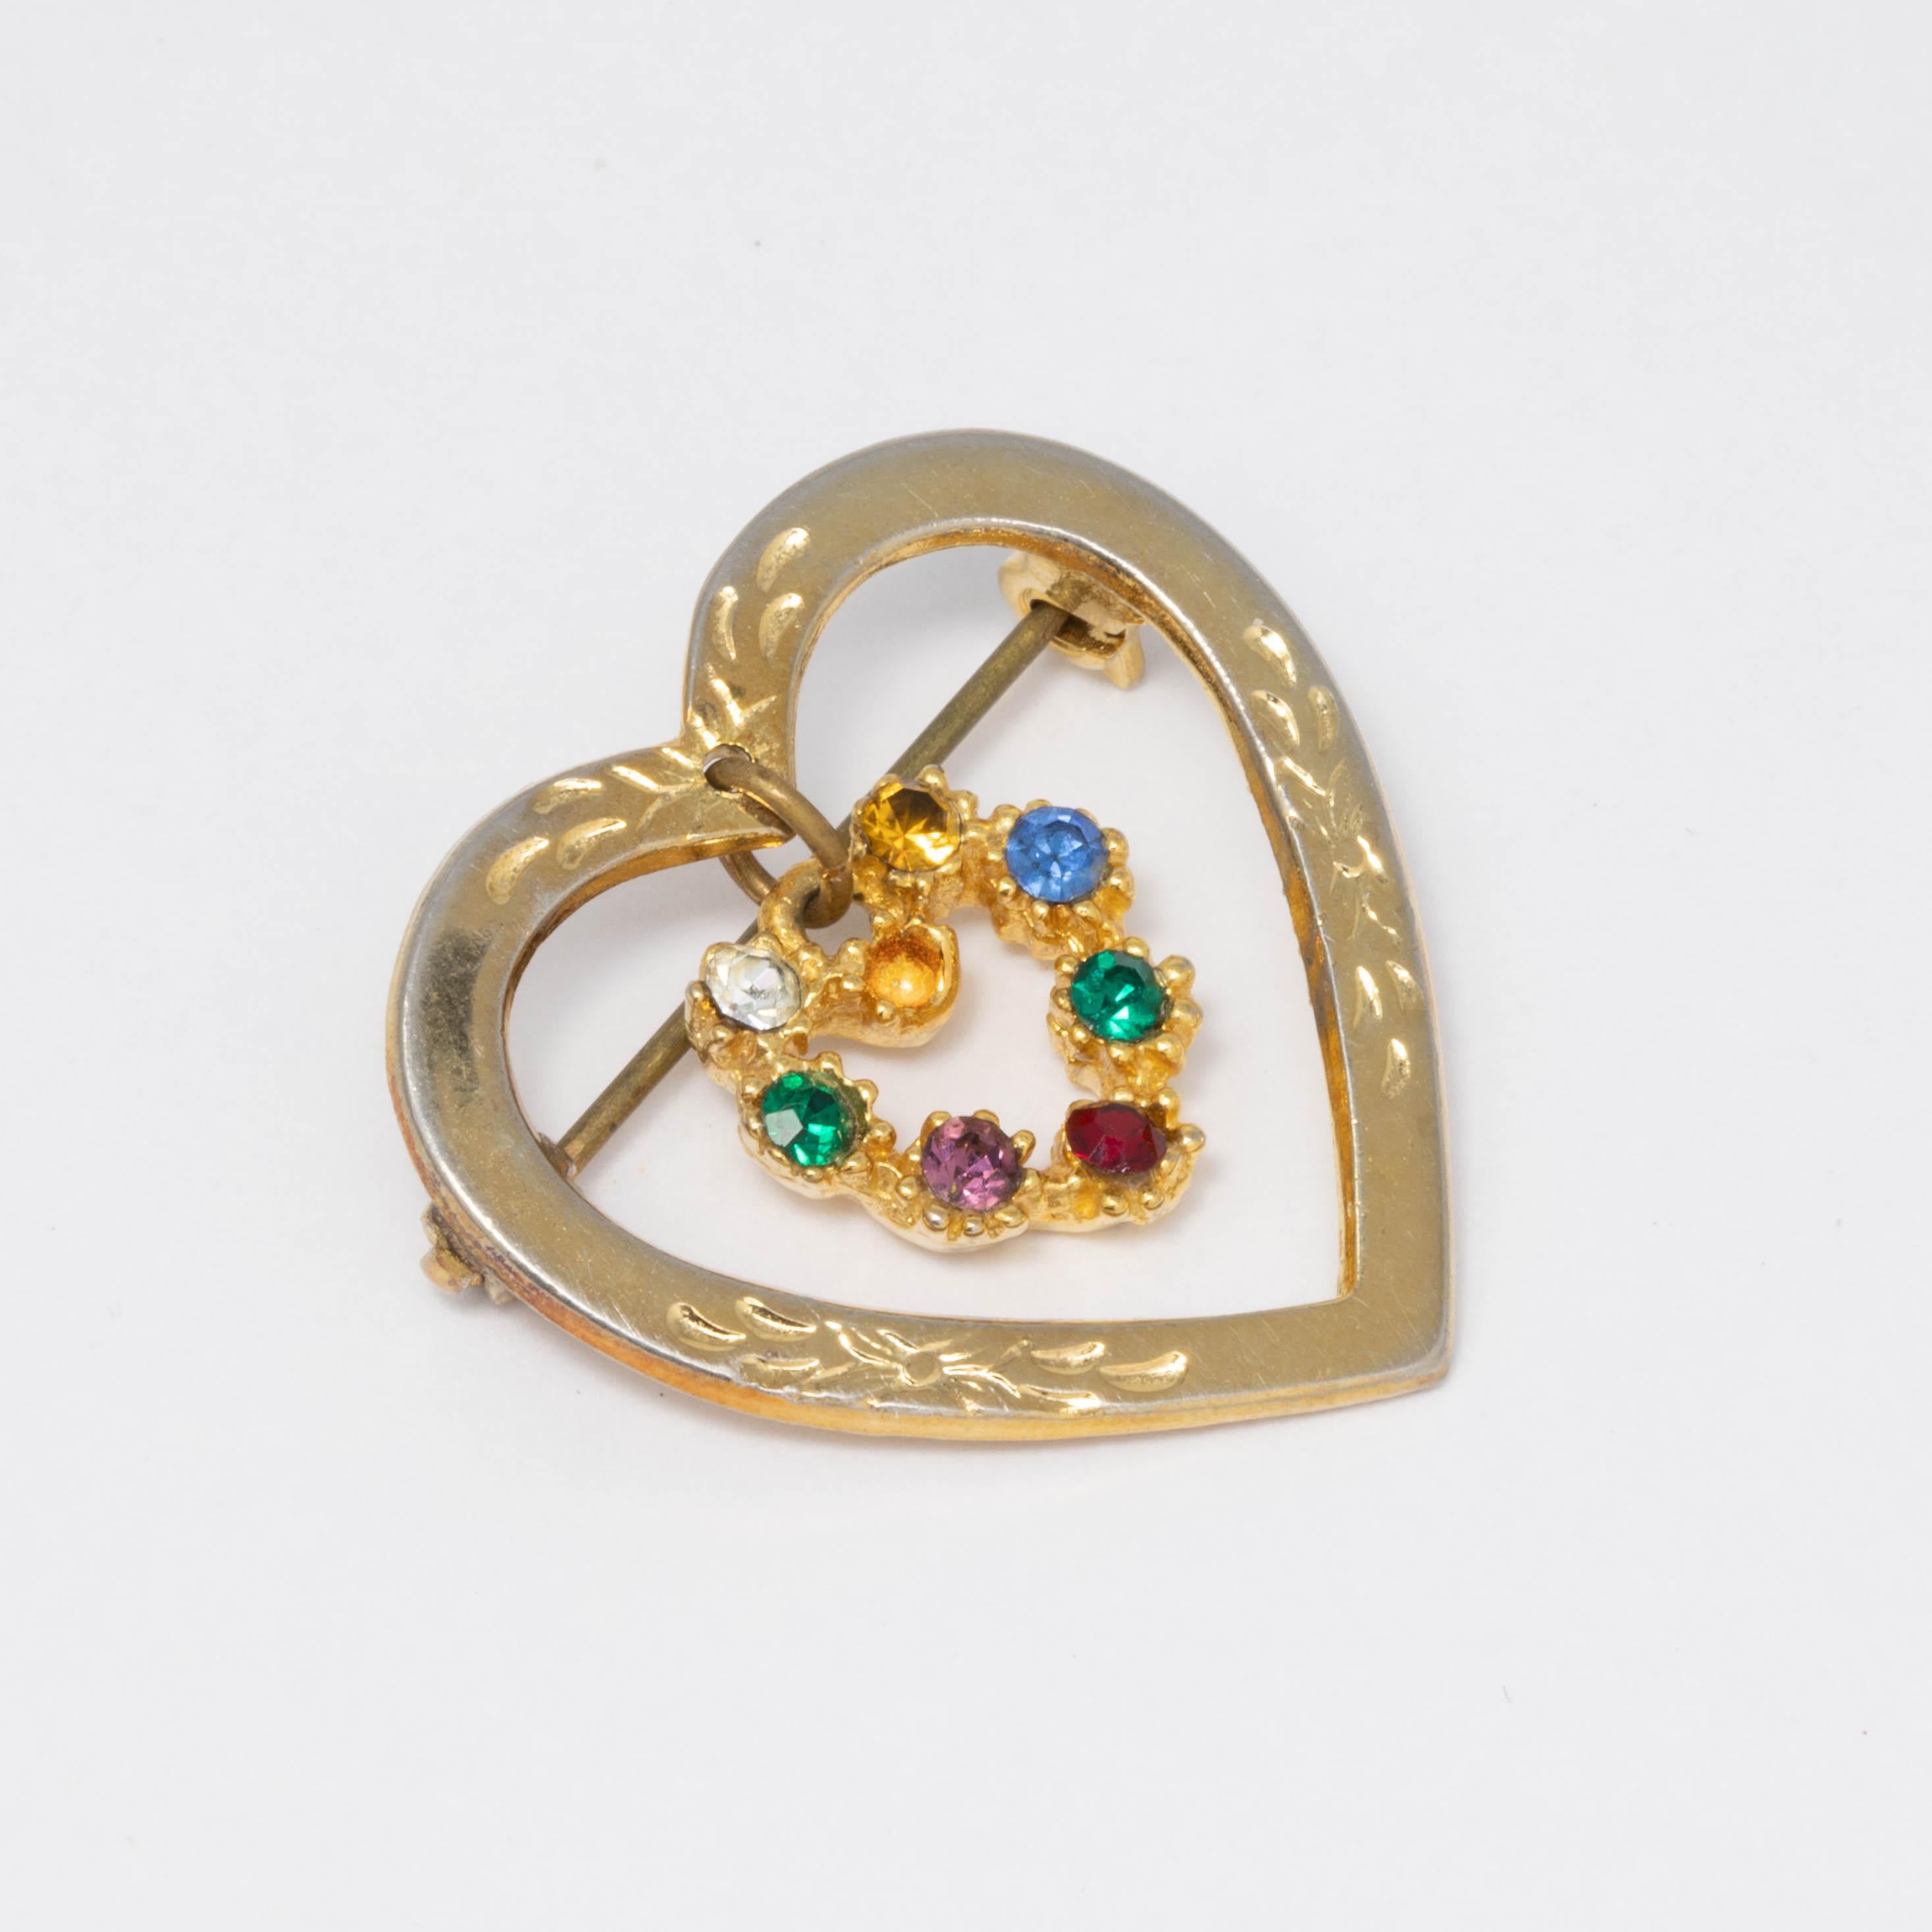 Ein offenes Herz in Goldton mit Akzent und einem zweiten Herz in Kristall, das im Inneren baumelt. 

Brosche aus der Mitte des 19. Jahrhunderts.